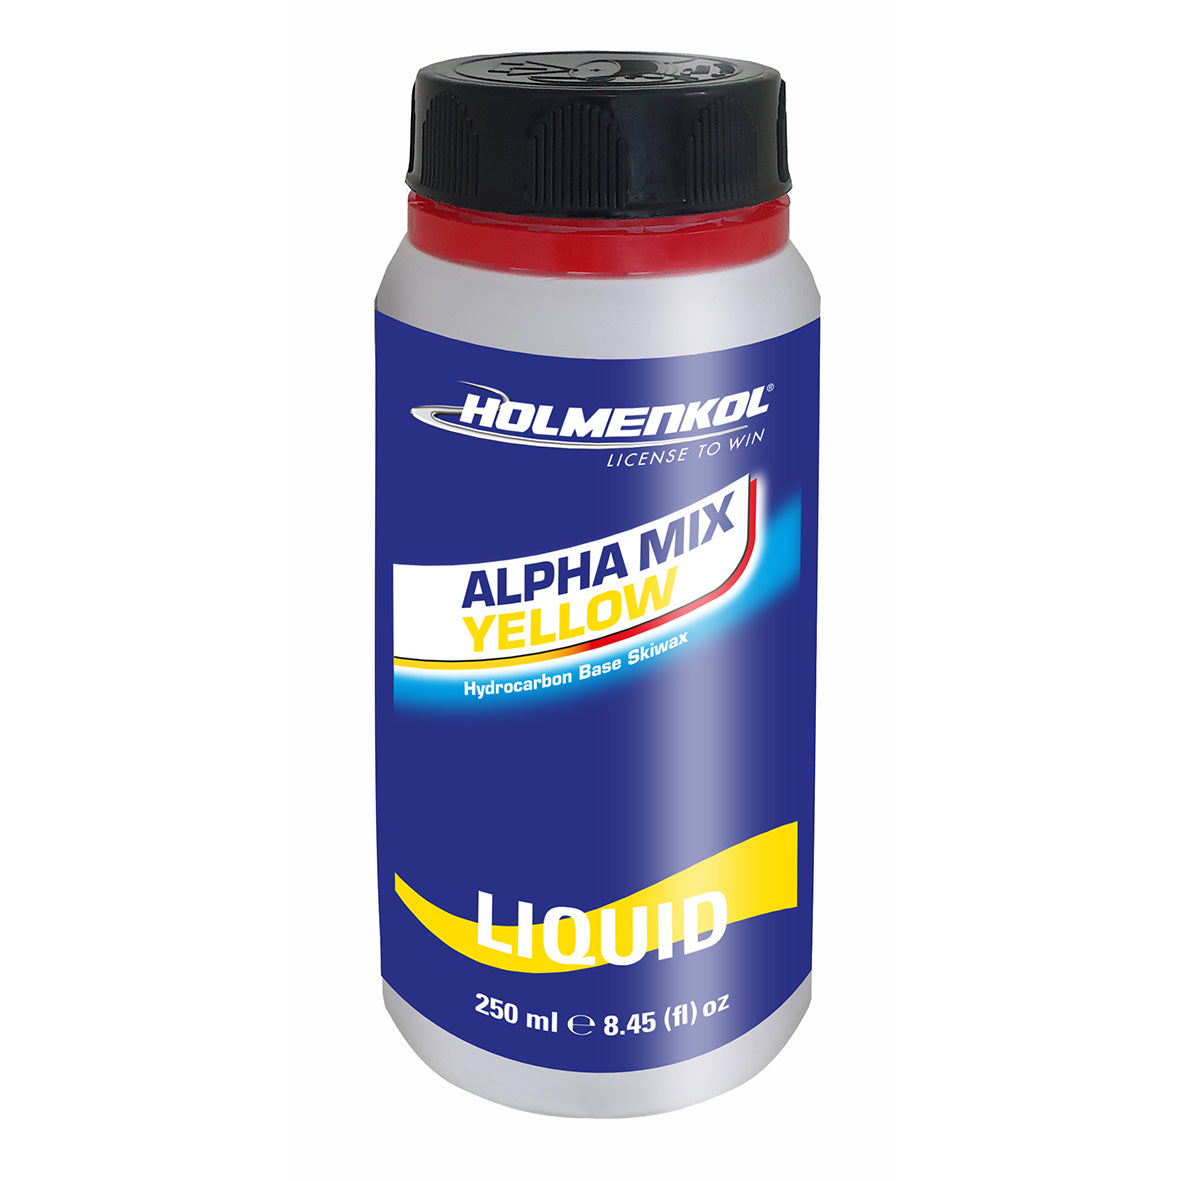 Holmenkol Alpha Mix Yellow liquid  250ml - 0